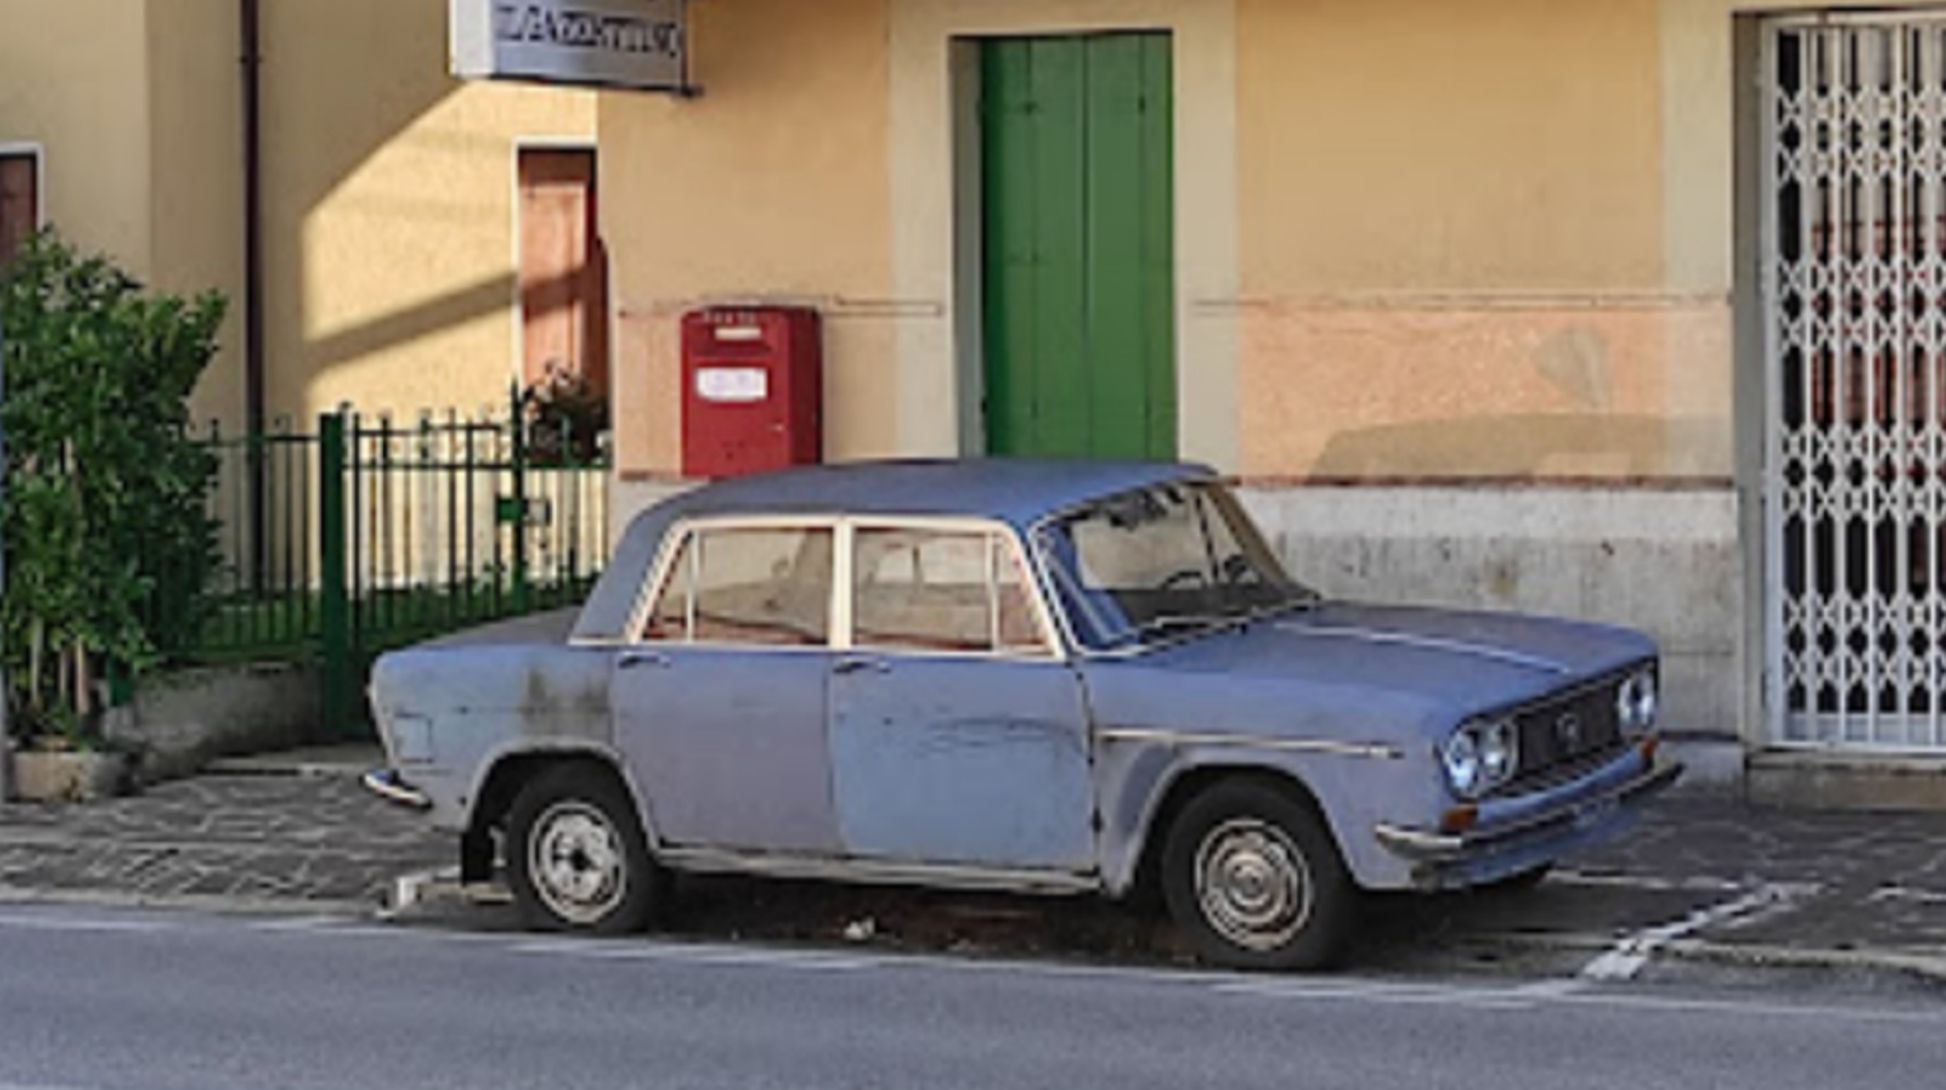 Lancia Fulvia - Conegliano - Google Maps - 47 aos en el mismo sitio - Angelo Fregolent - restaurado